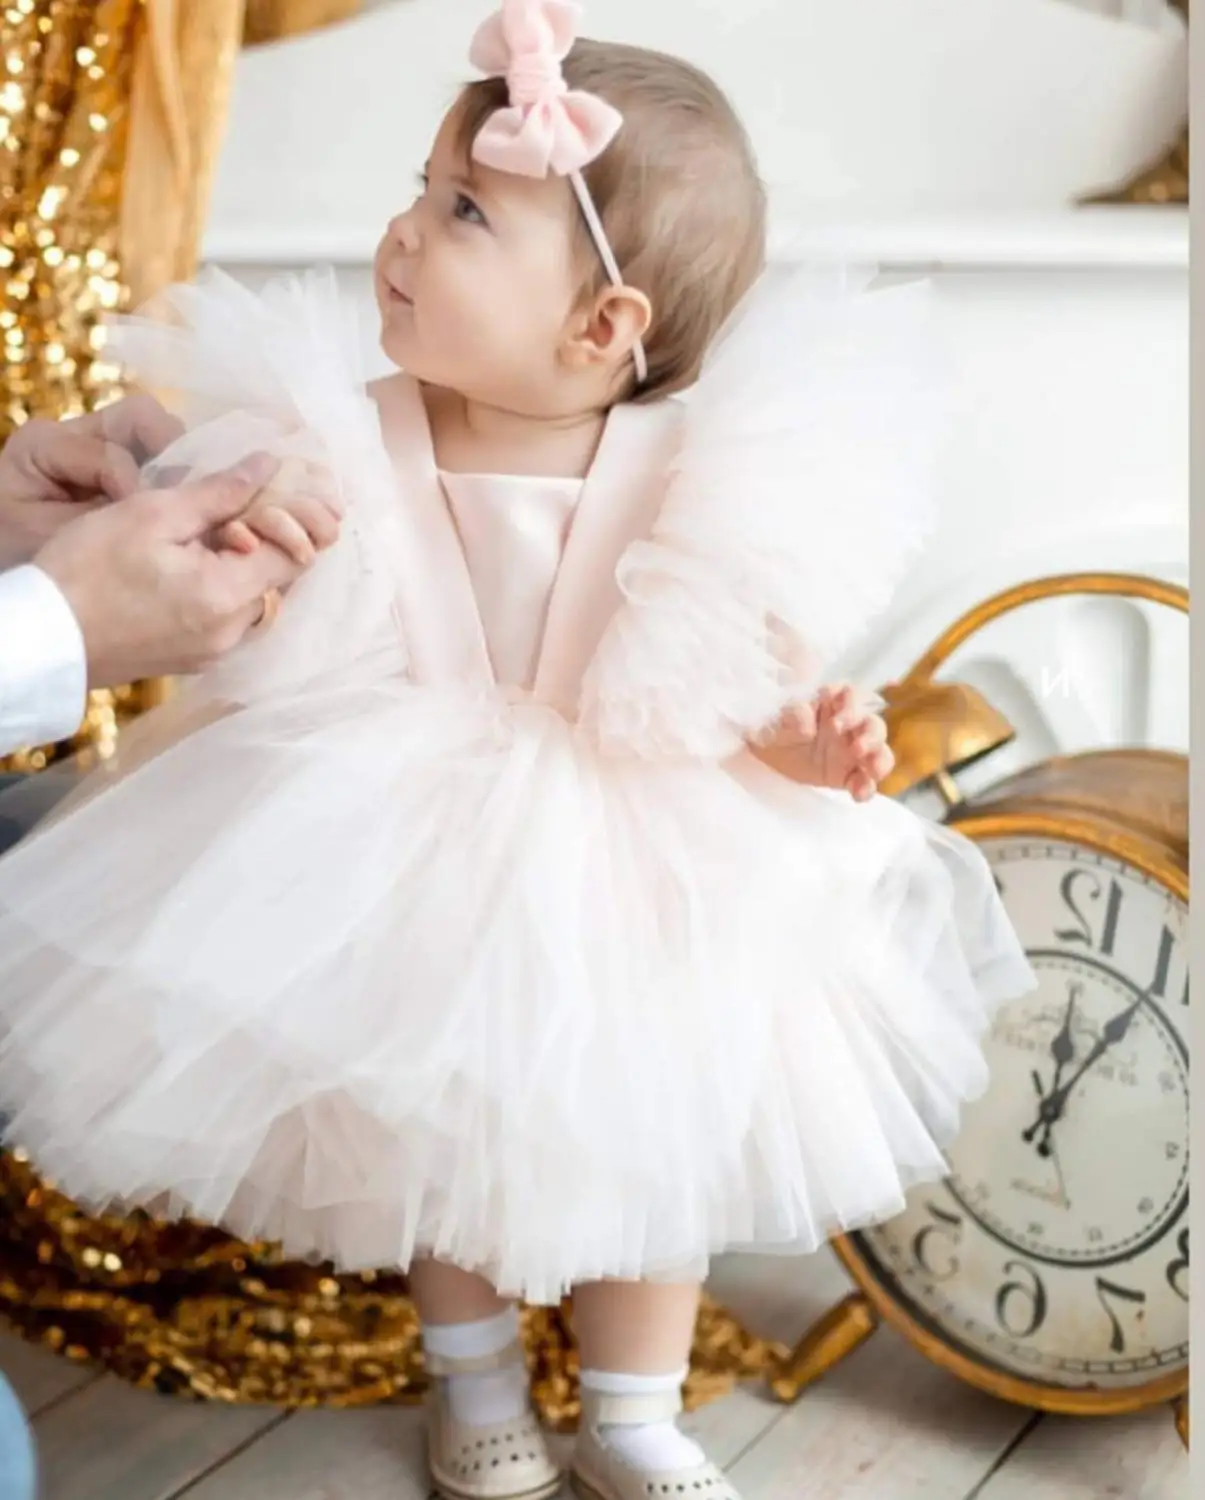 

Детское праздвечерние чное платье для девочек, рождественское пушистое бальное платье, свадебная одежда на день рождения, костюм принцессы...